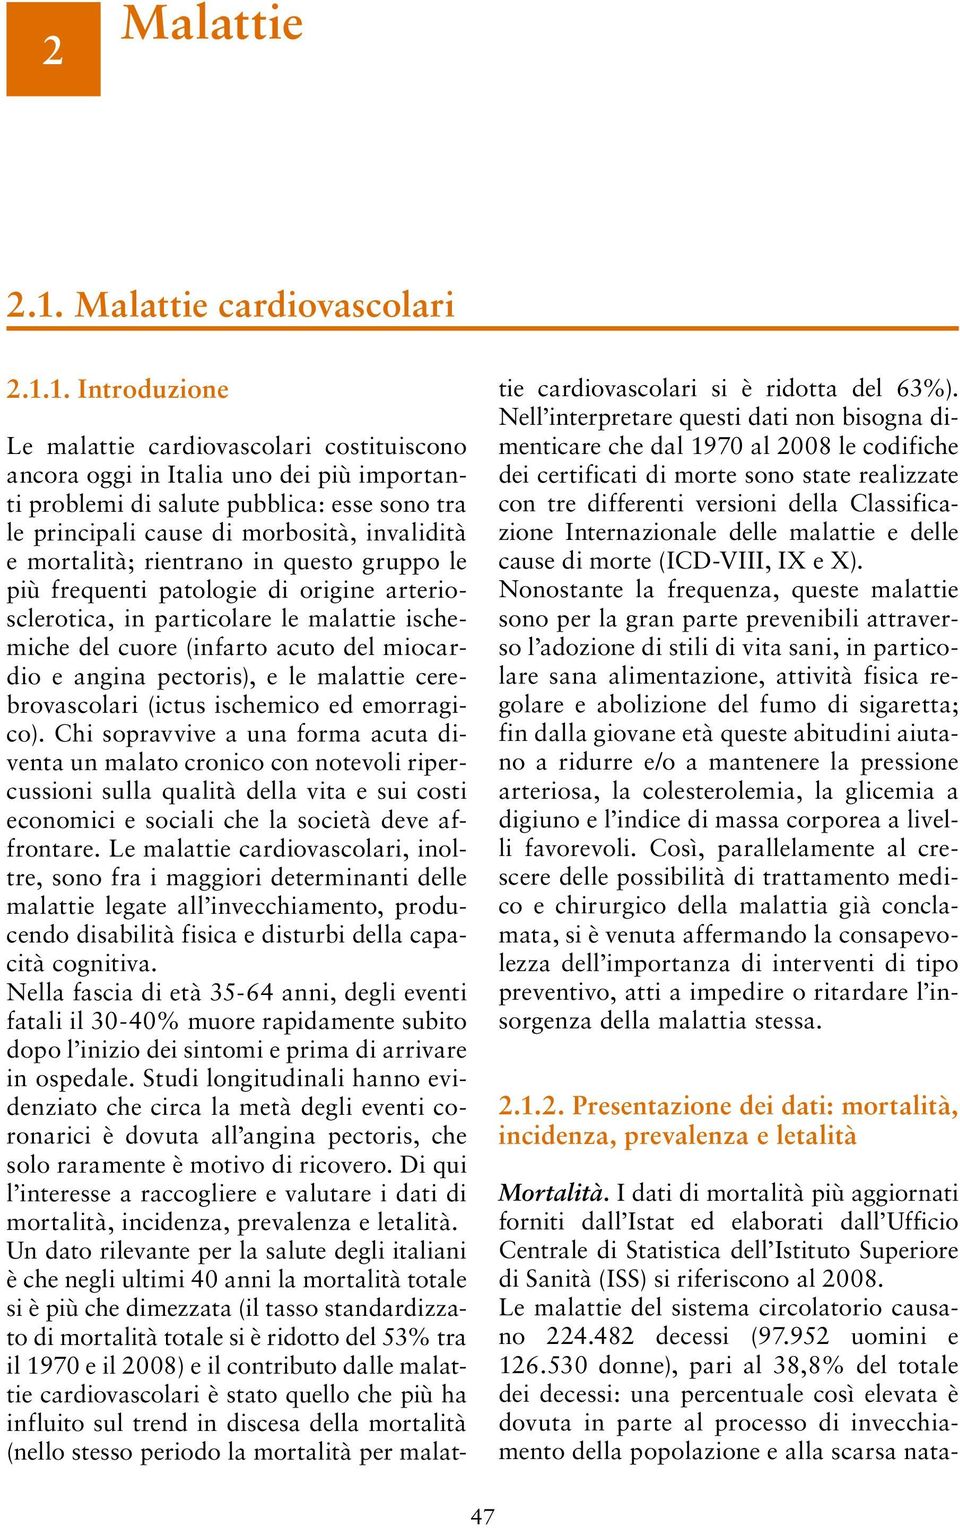 1. Introduzione Le malattie cardiovascolari costituiscono ancora oggi in Italia uno dei più importanti problemi di salute pubblica: esse sono tra le principali cause di morbosità, invalidità e